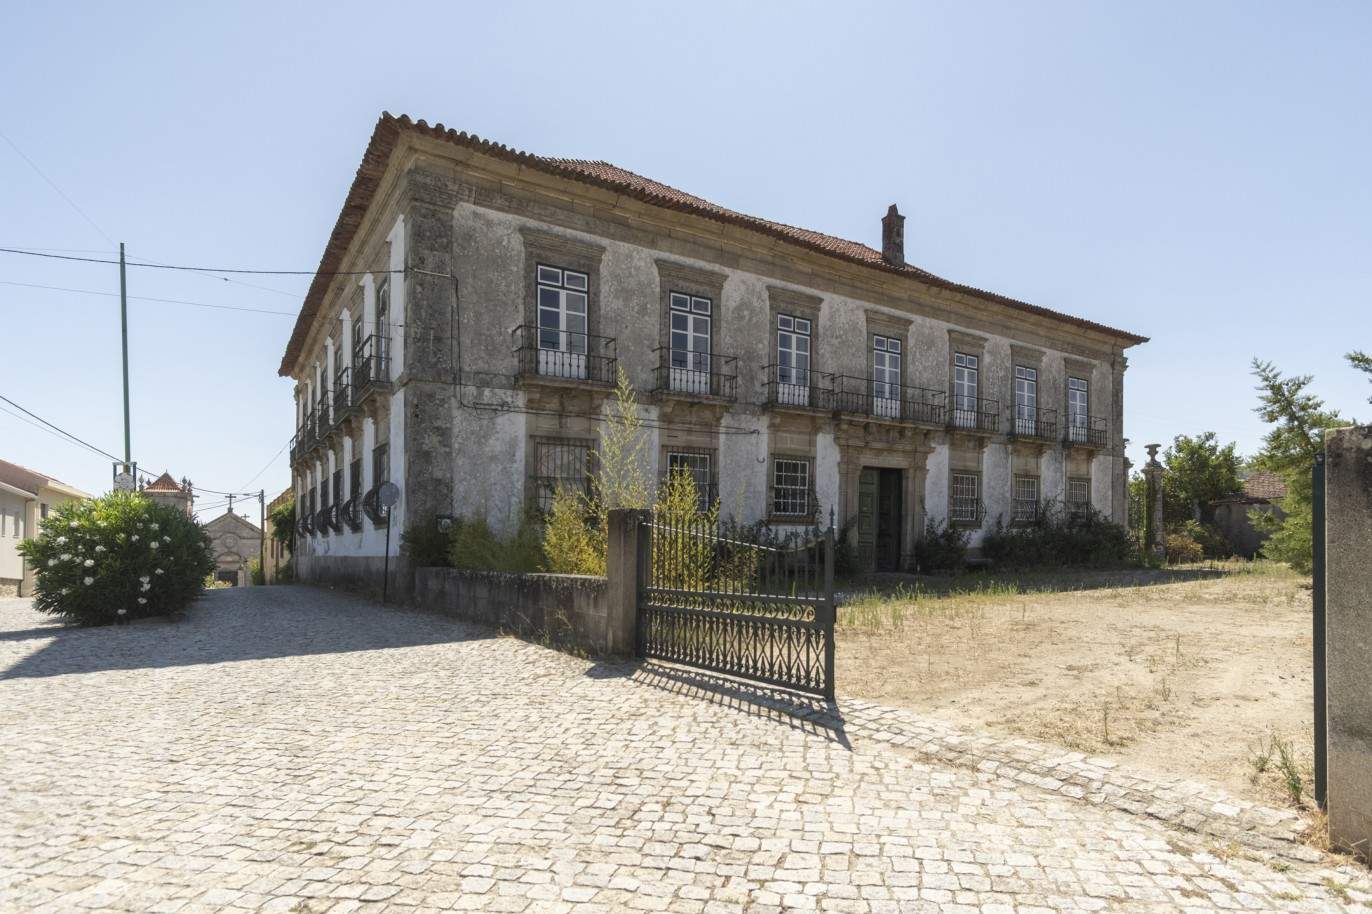 Venda: Palacete para restaurar com jardins, Lamego, Alto Douro _207357